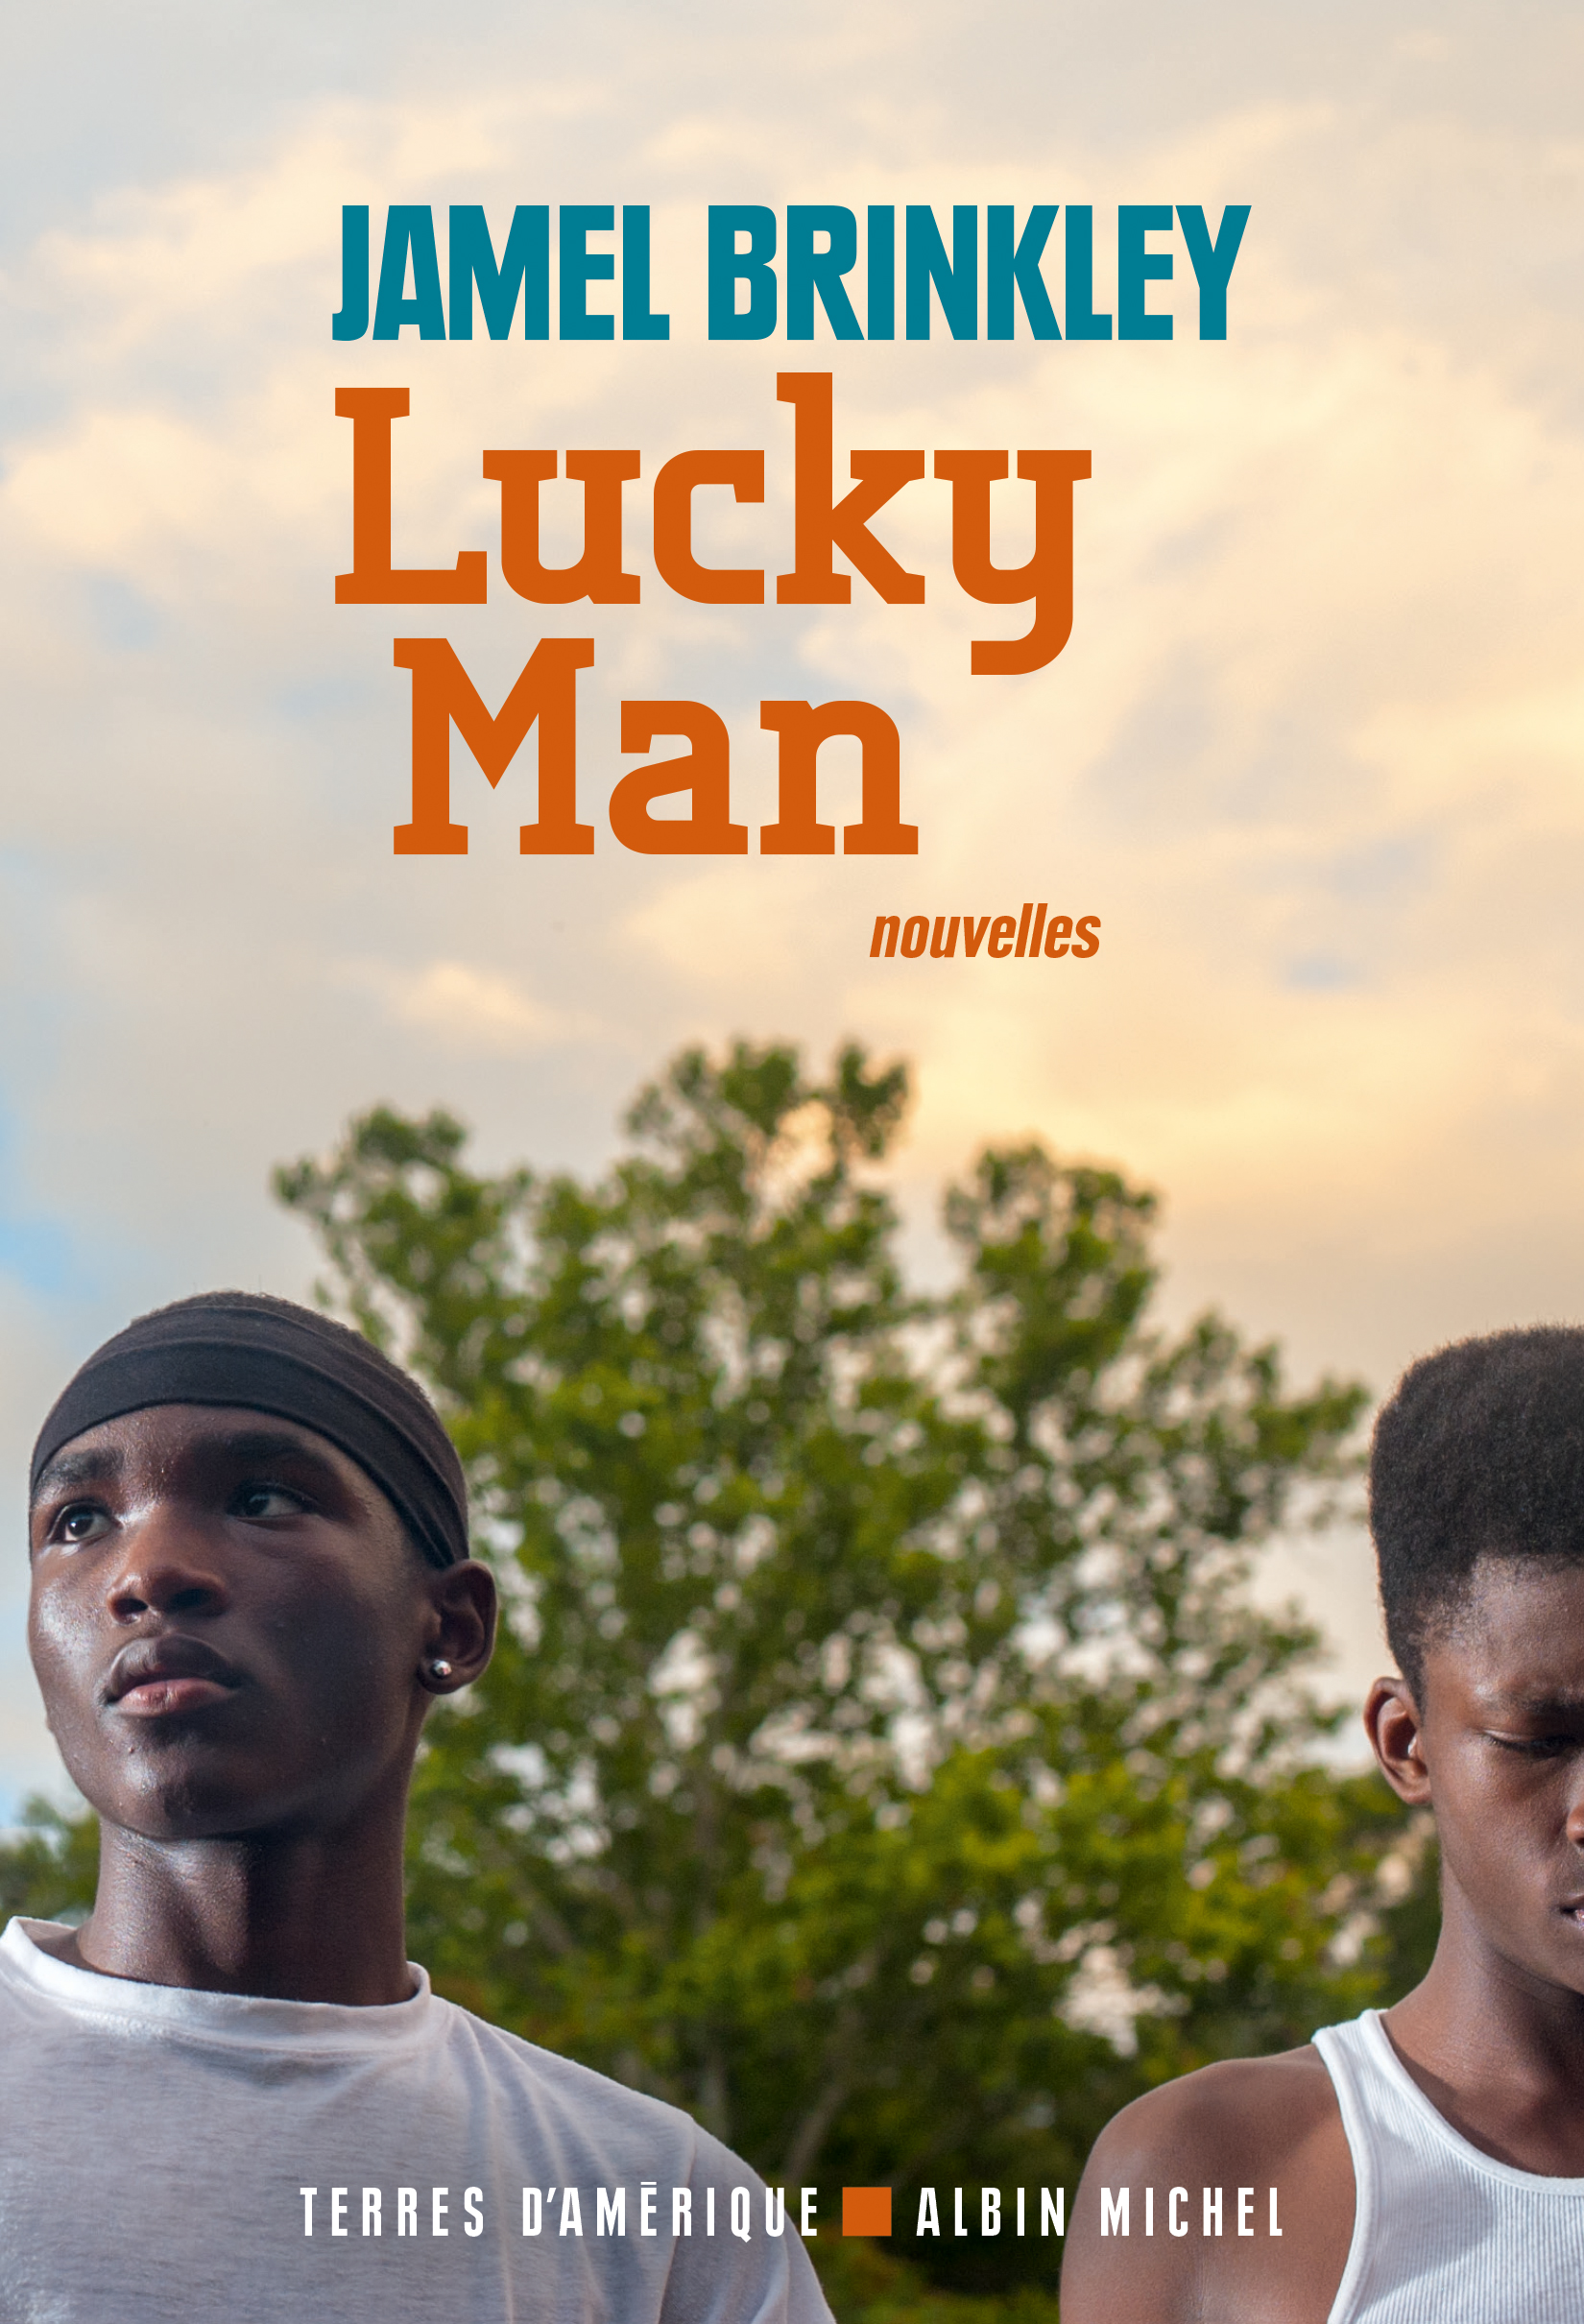 Couverture du livre Lucky Man